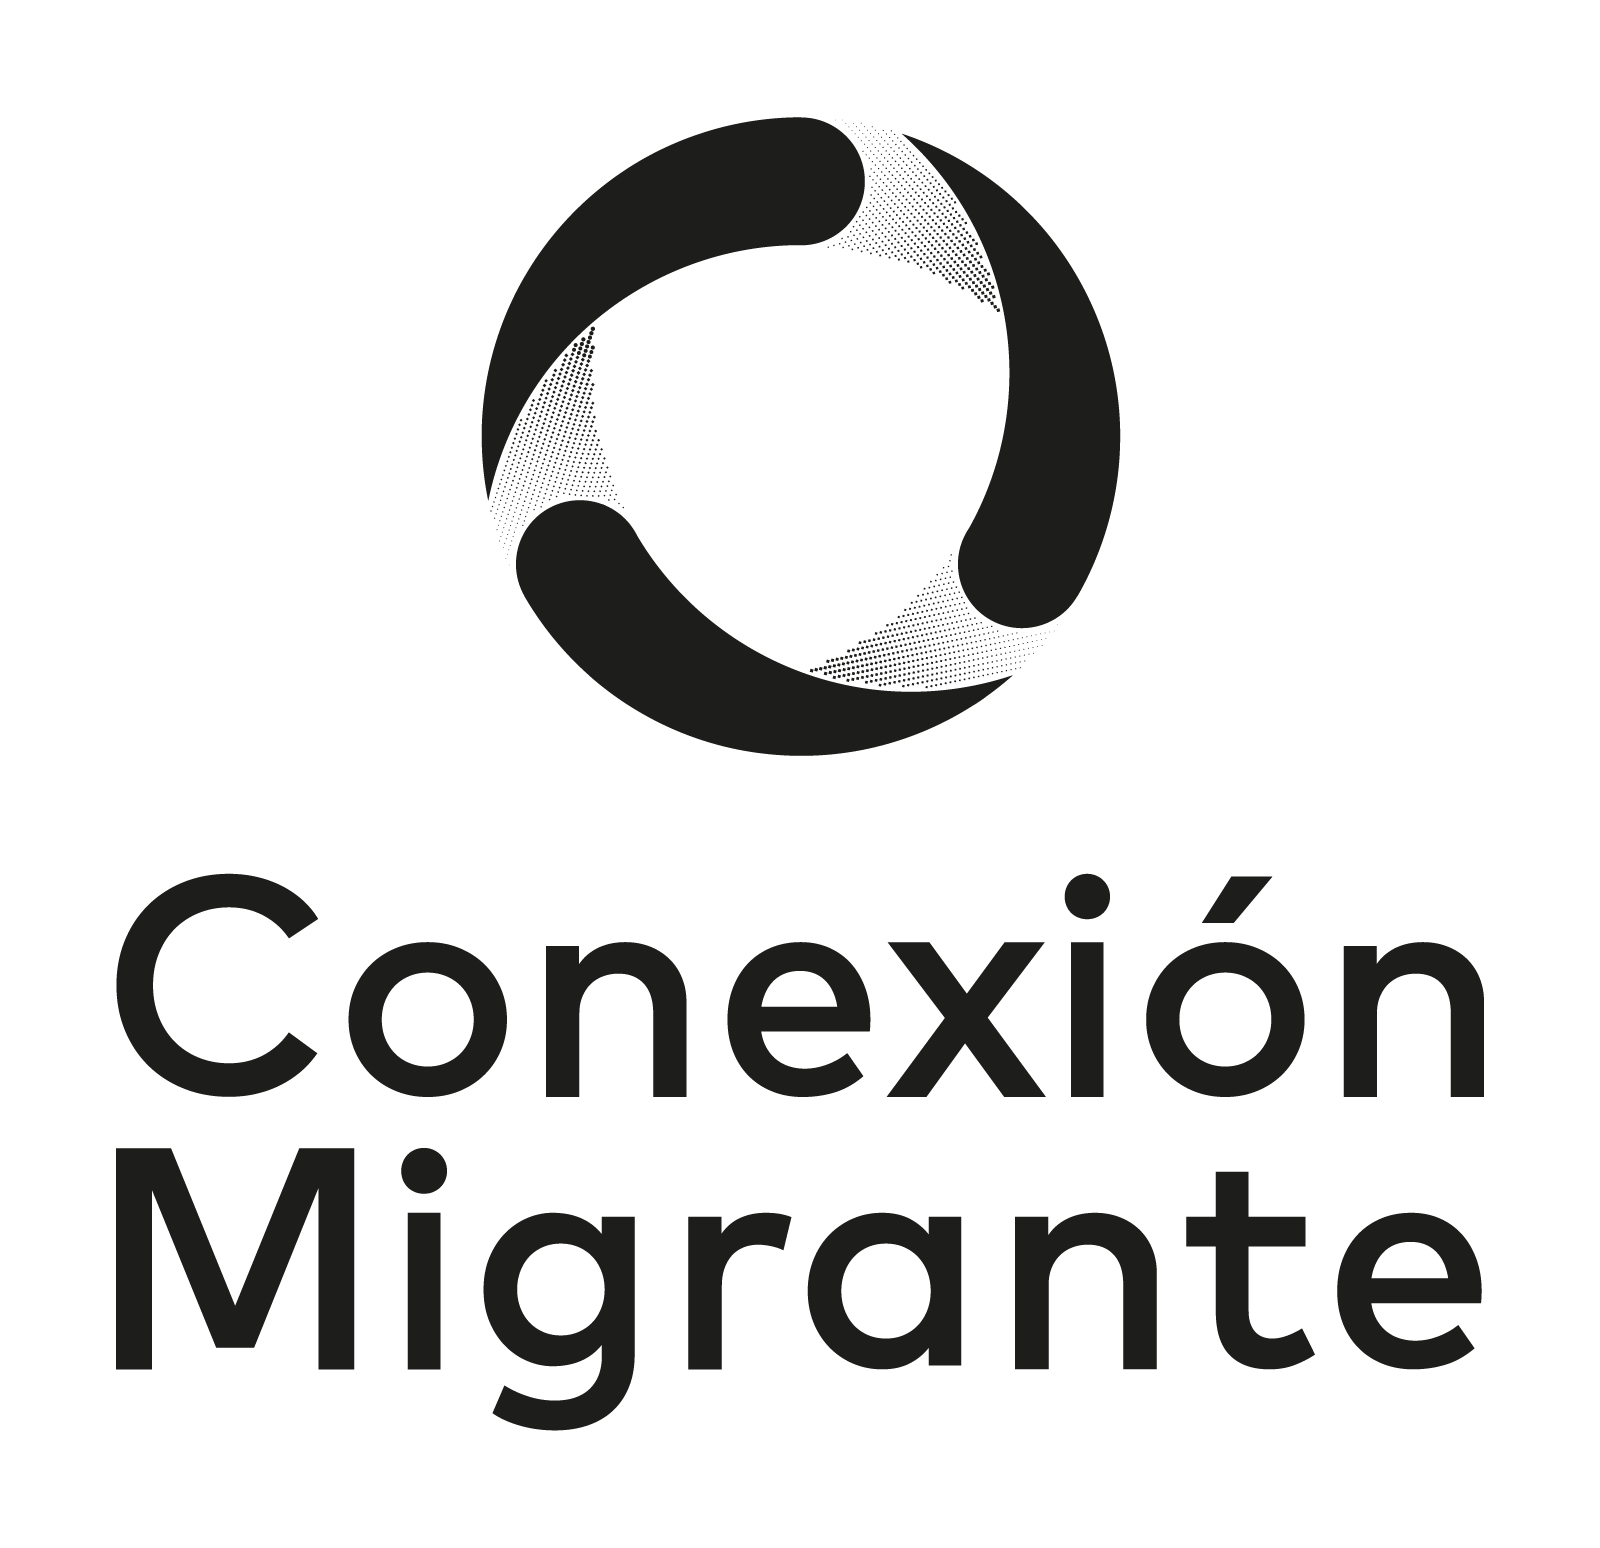 Conexión Migrante